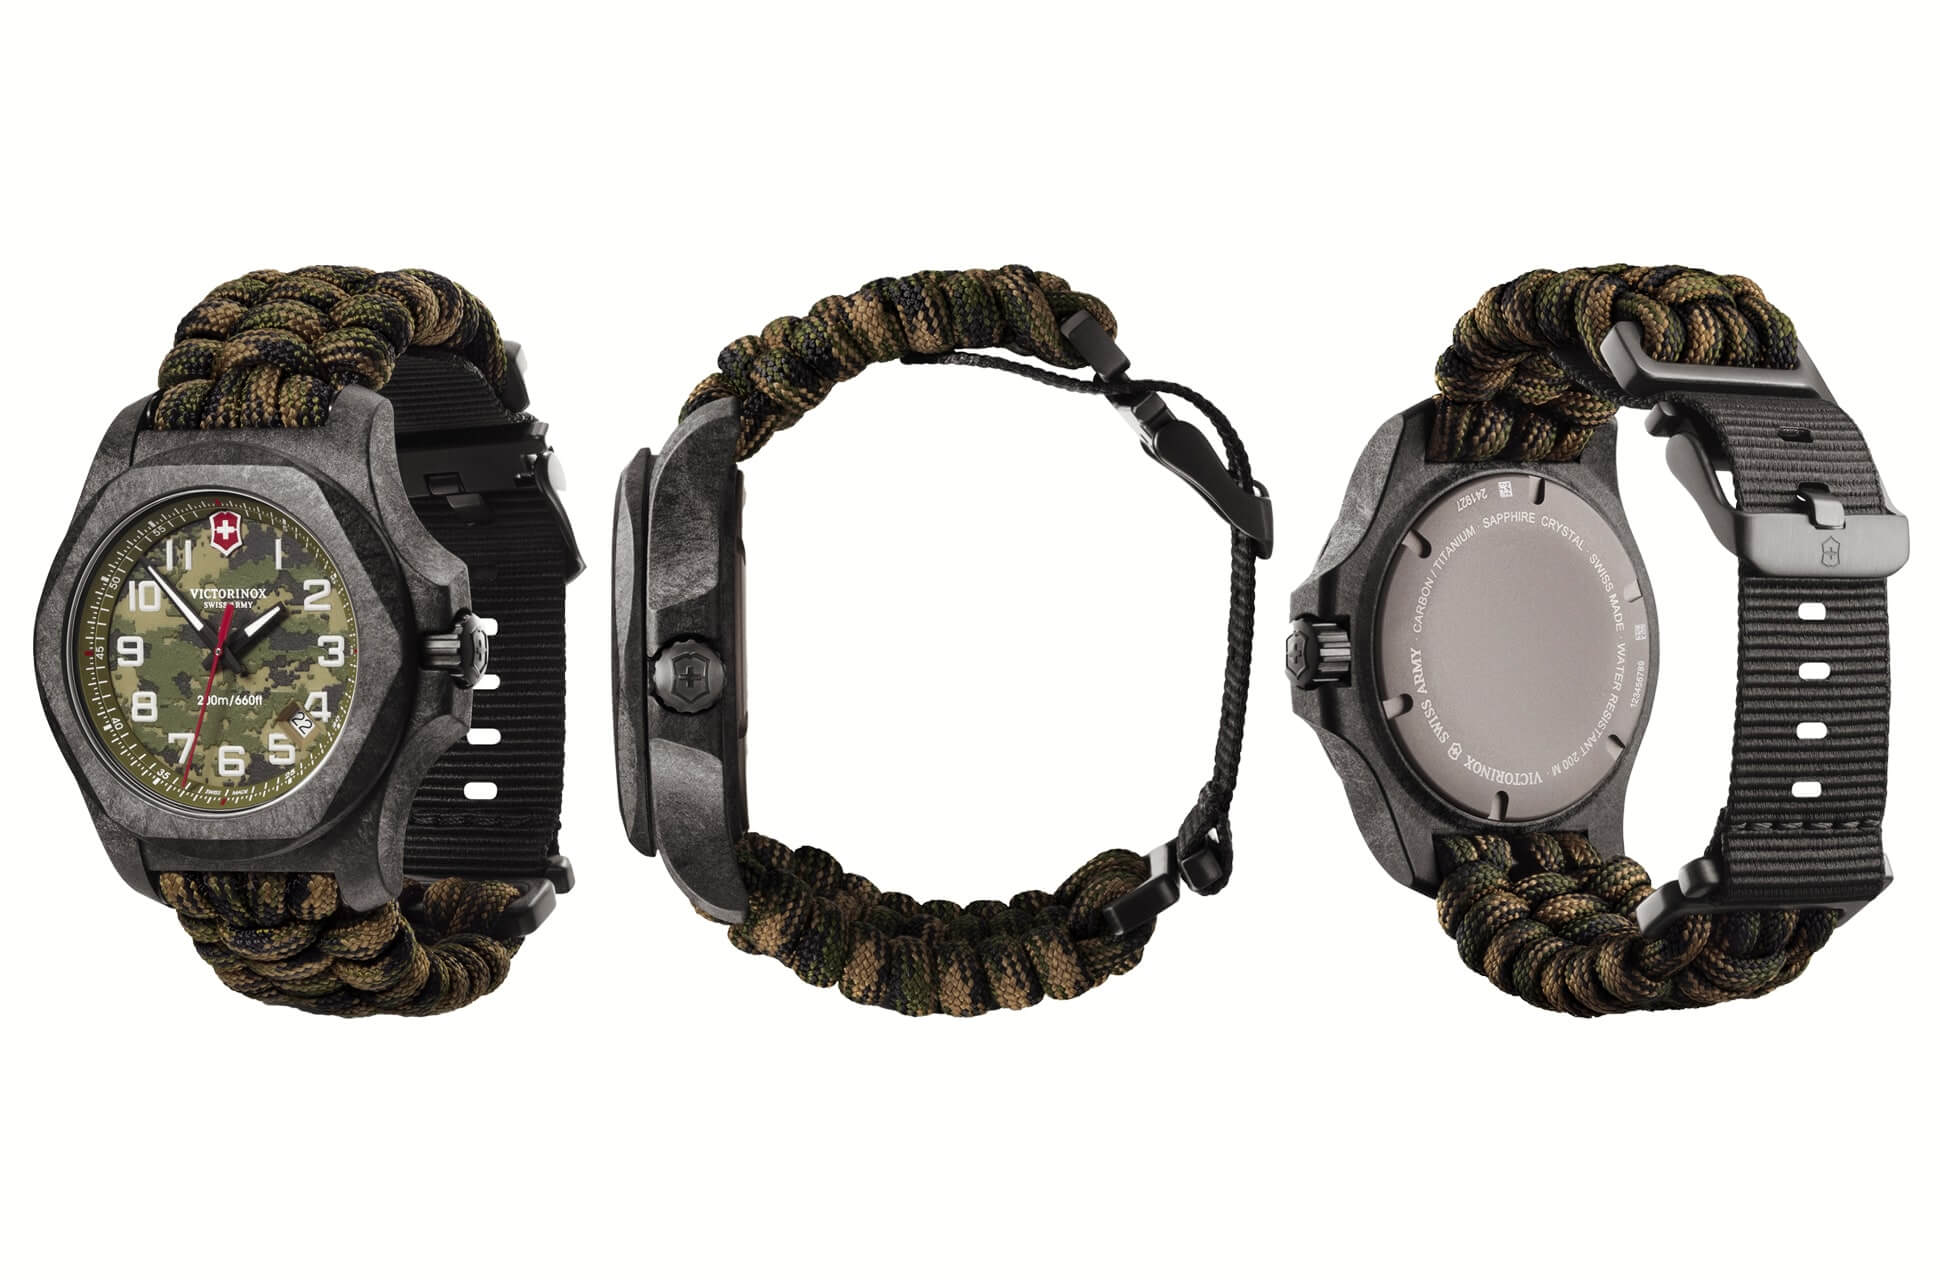 Nouvelle I.N.O.X Carbon LE Victorinox : la montre caméléon taillée pour l’aventure